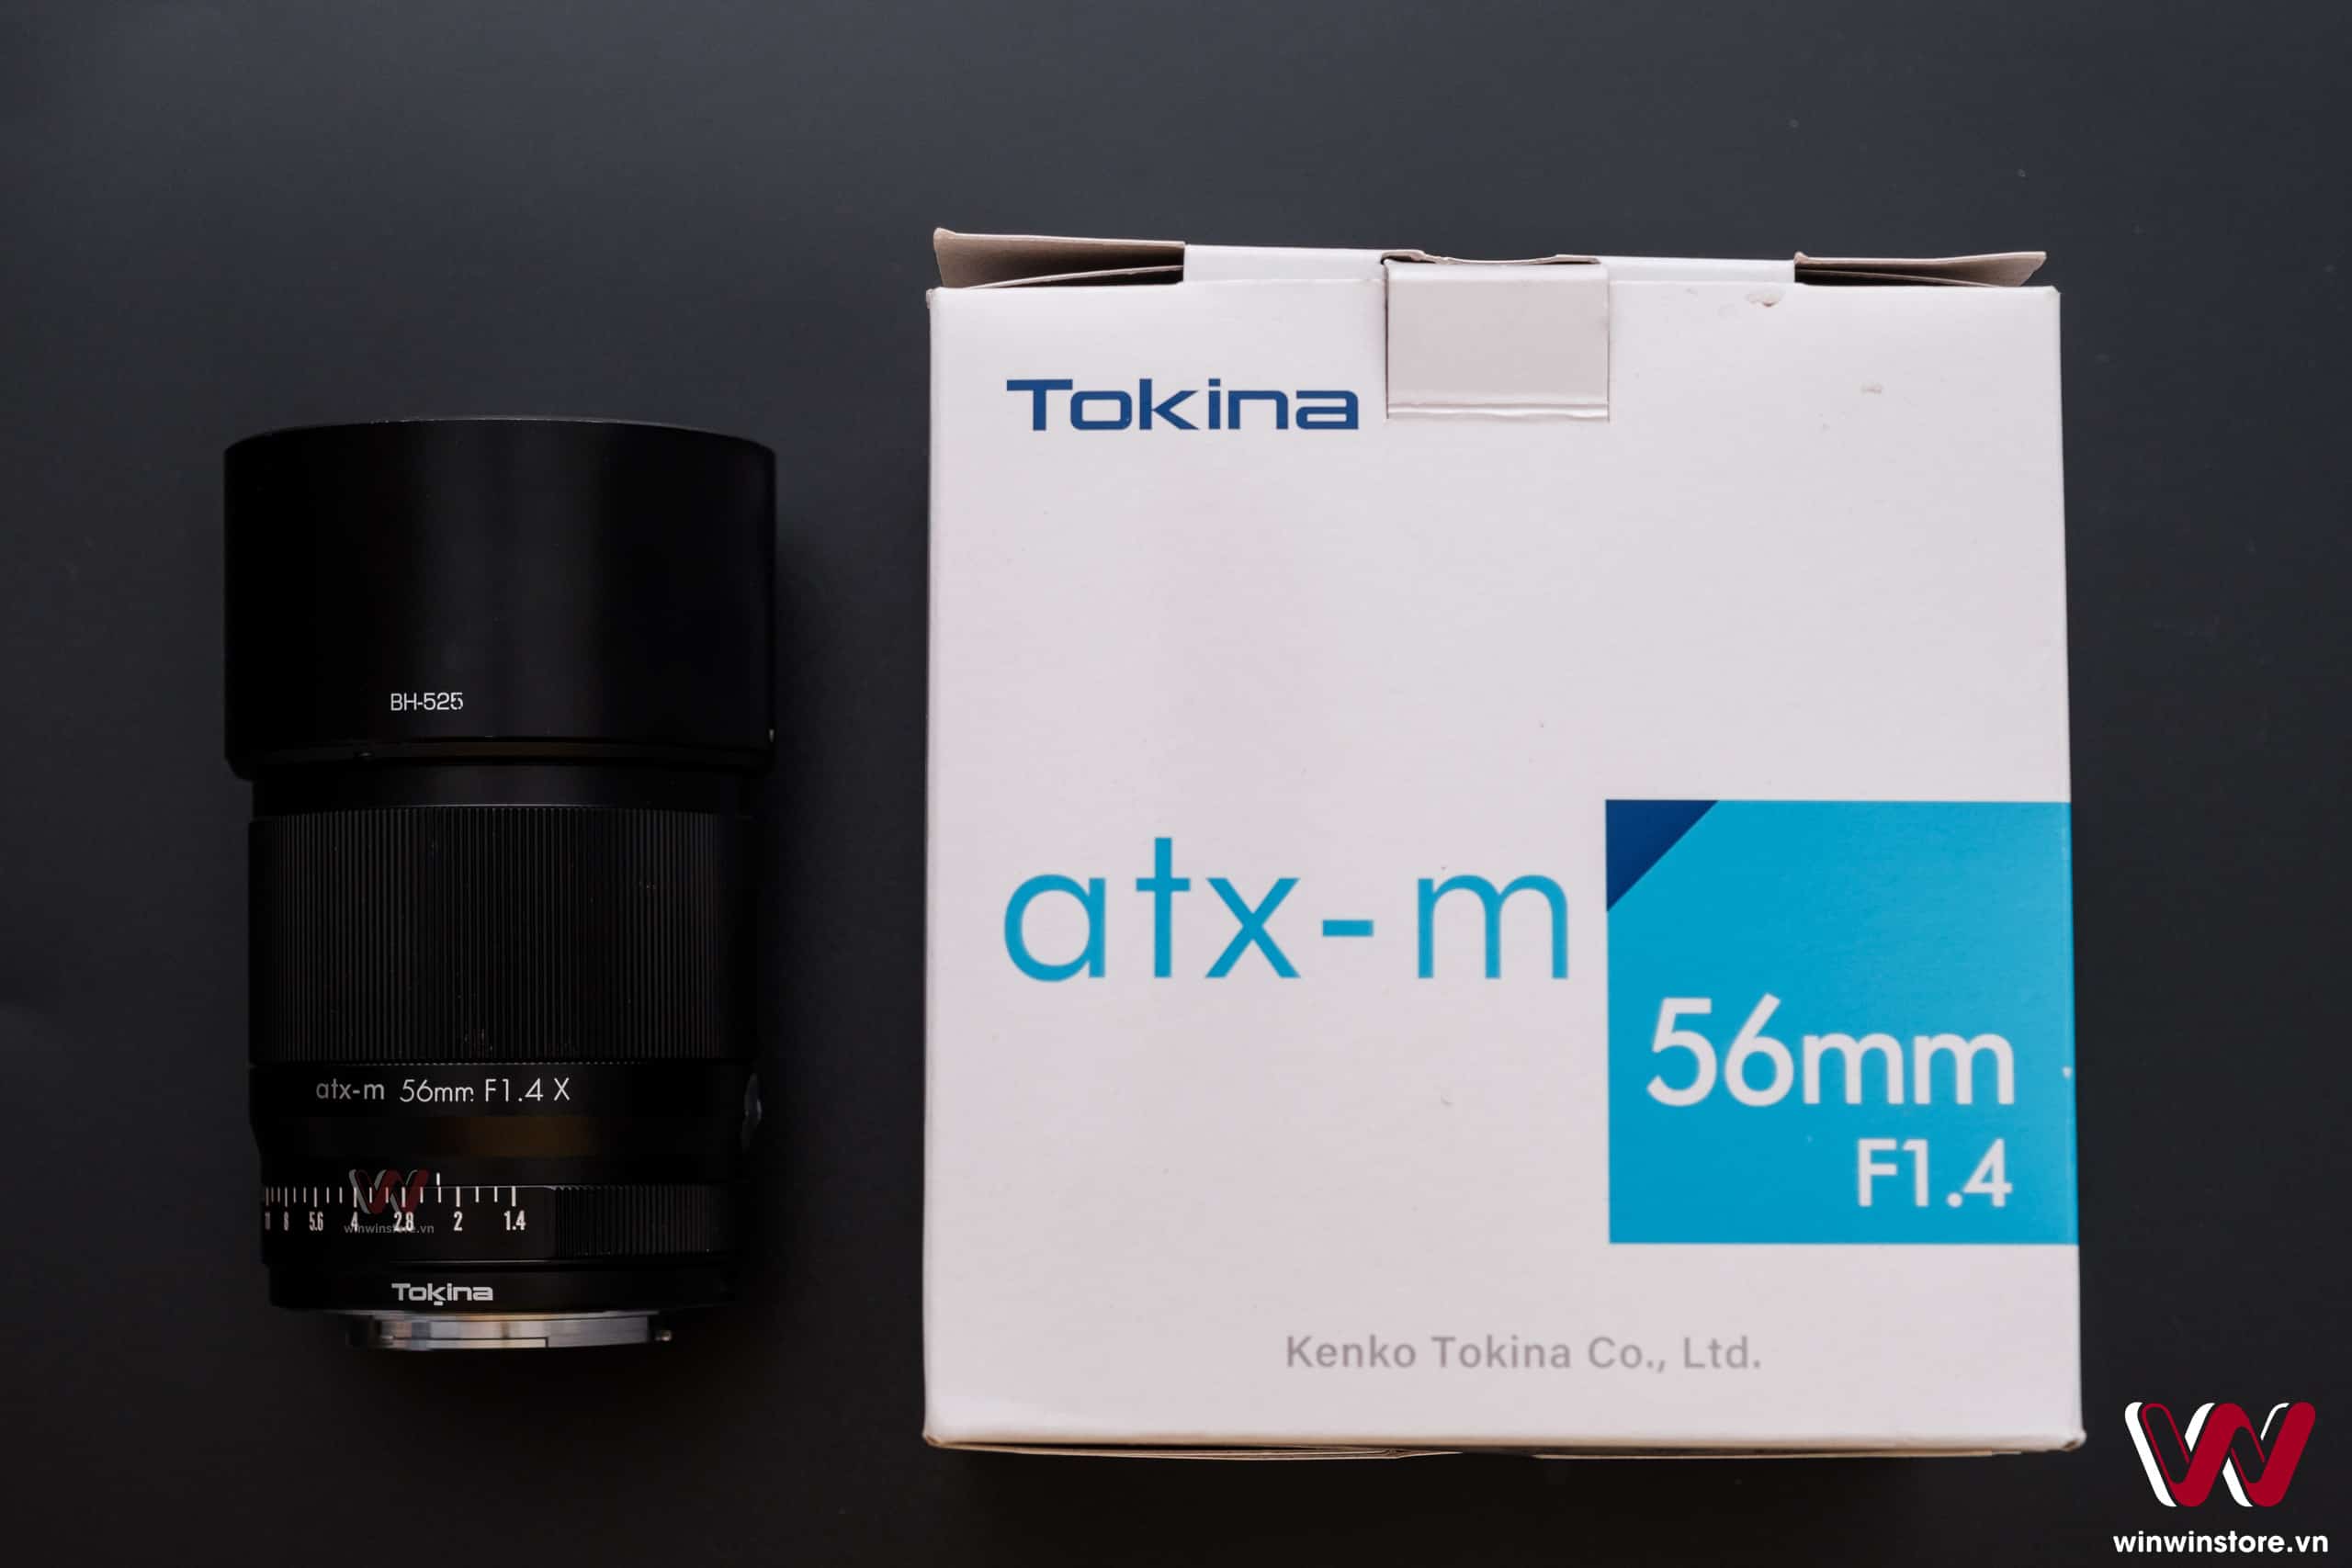 Trên tay bộ ba ống kính Tokina 23mm F1.4, 33mm F1.4 và 56mm F1.4 dành cho máy ảnh Fujifilm ngàm X